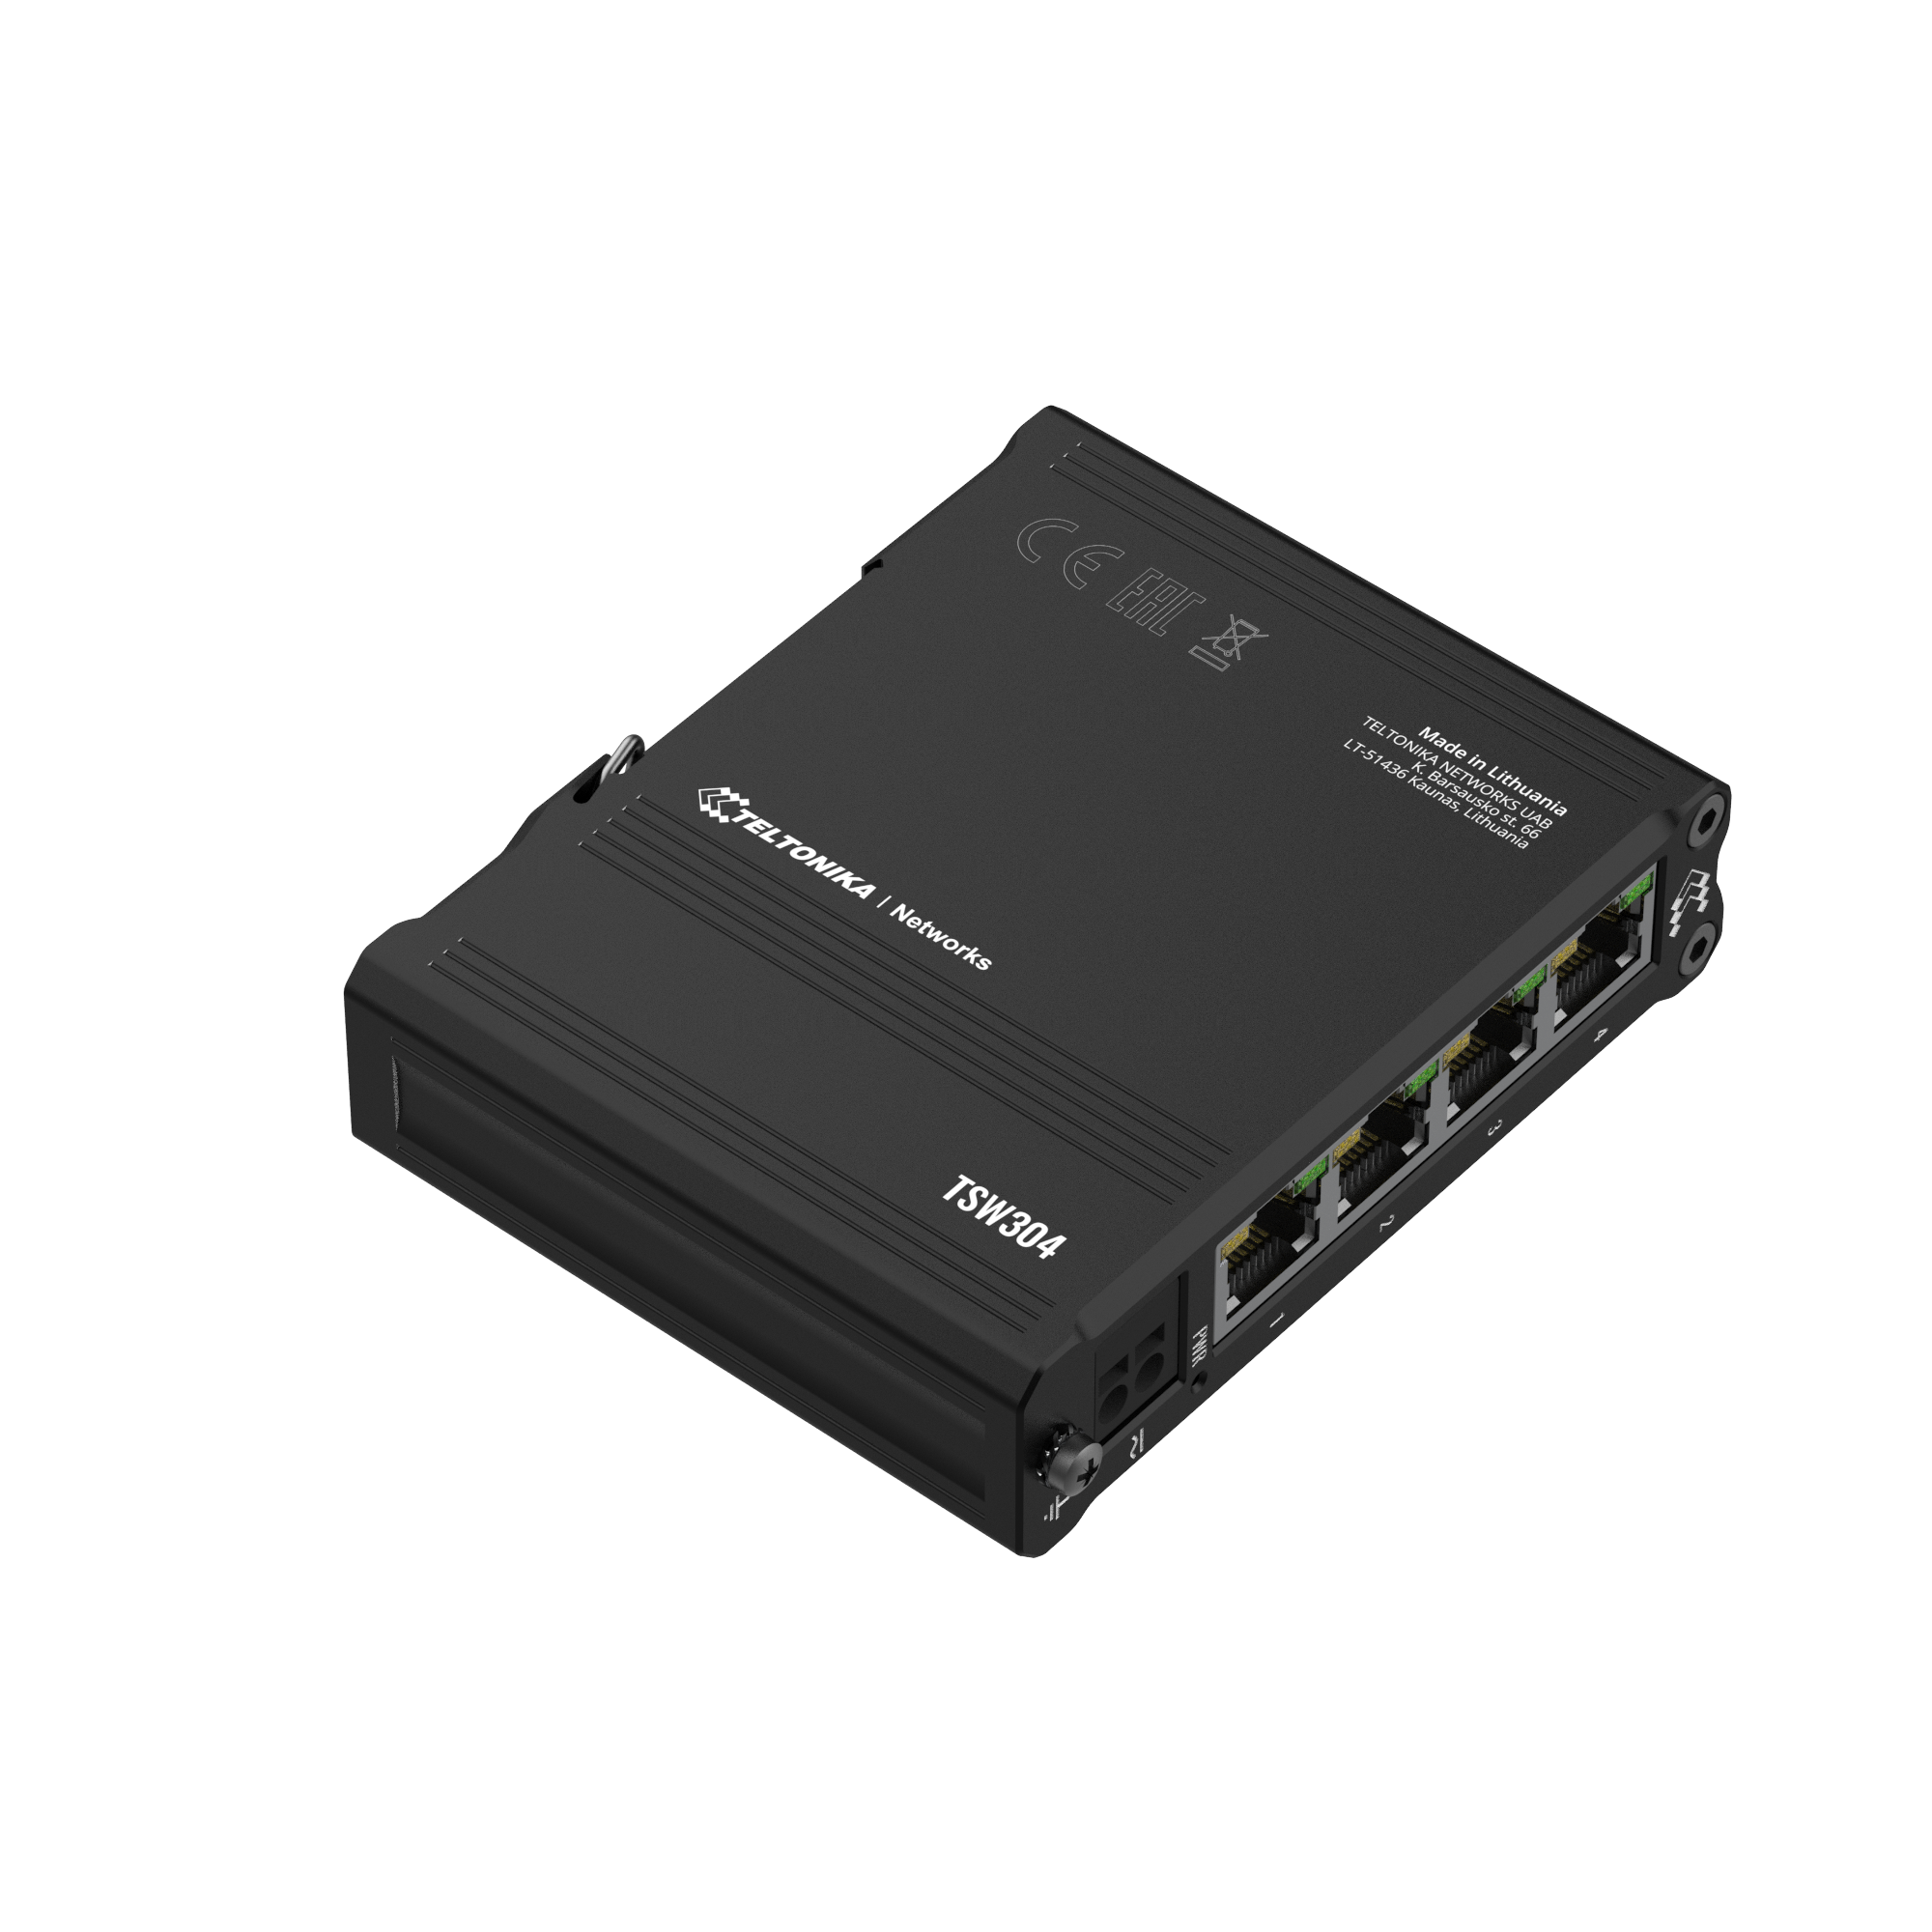 TSW304 - Teltonika Switches. 4 x Gigabit Ethernet ports